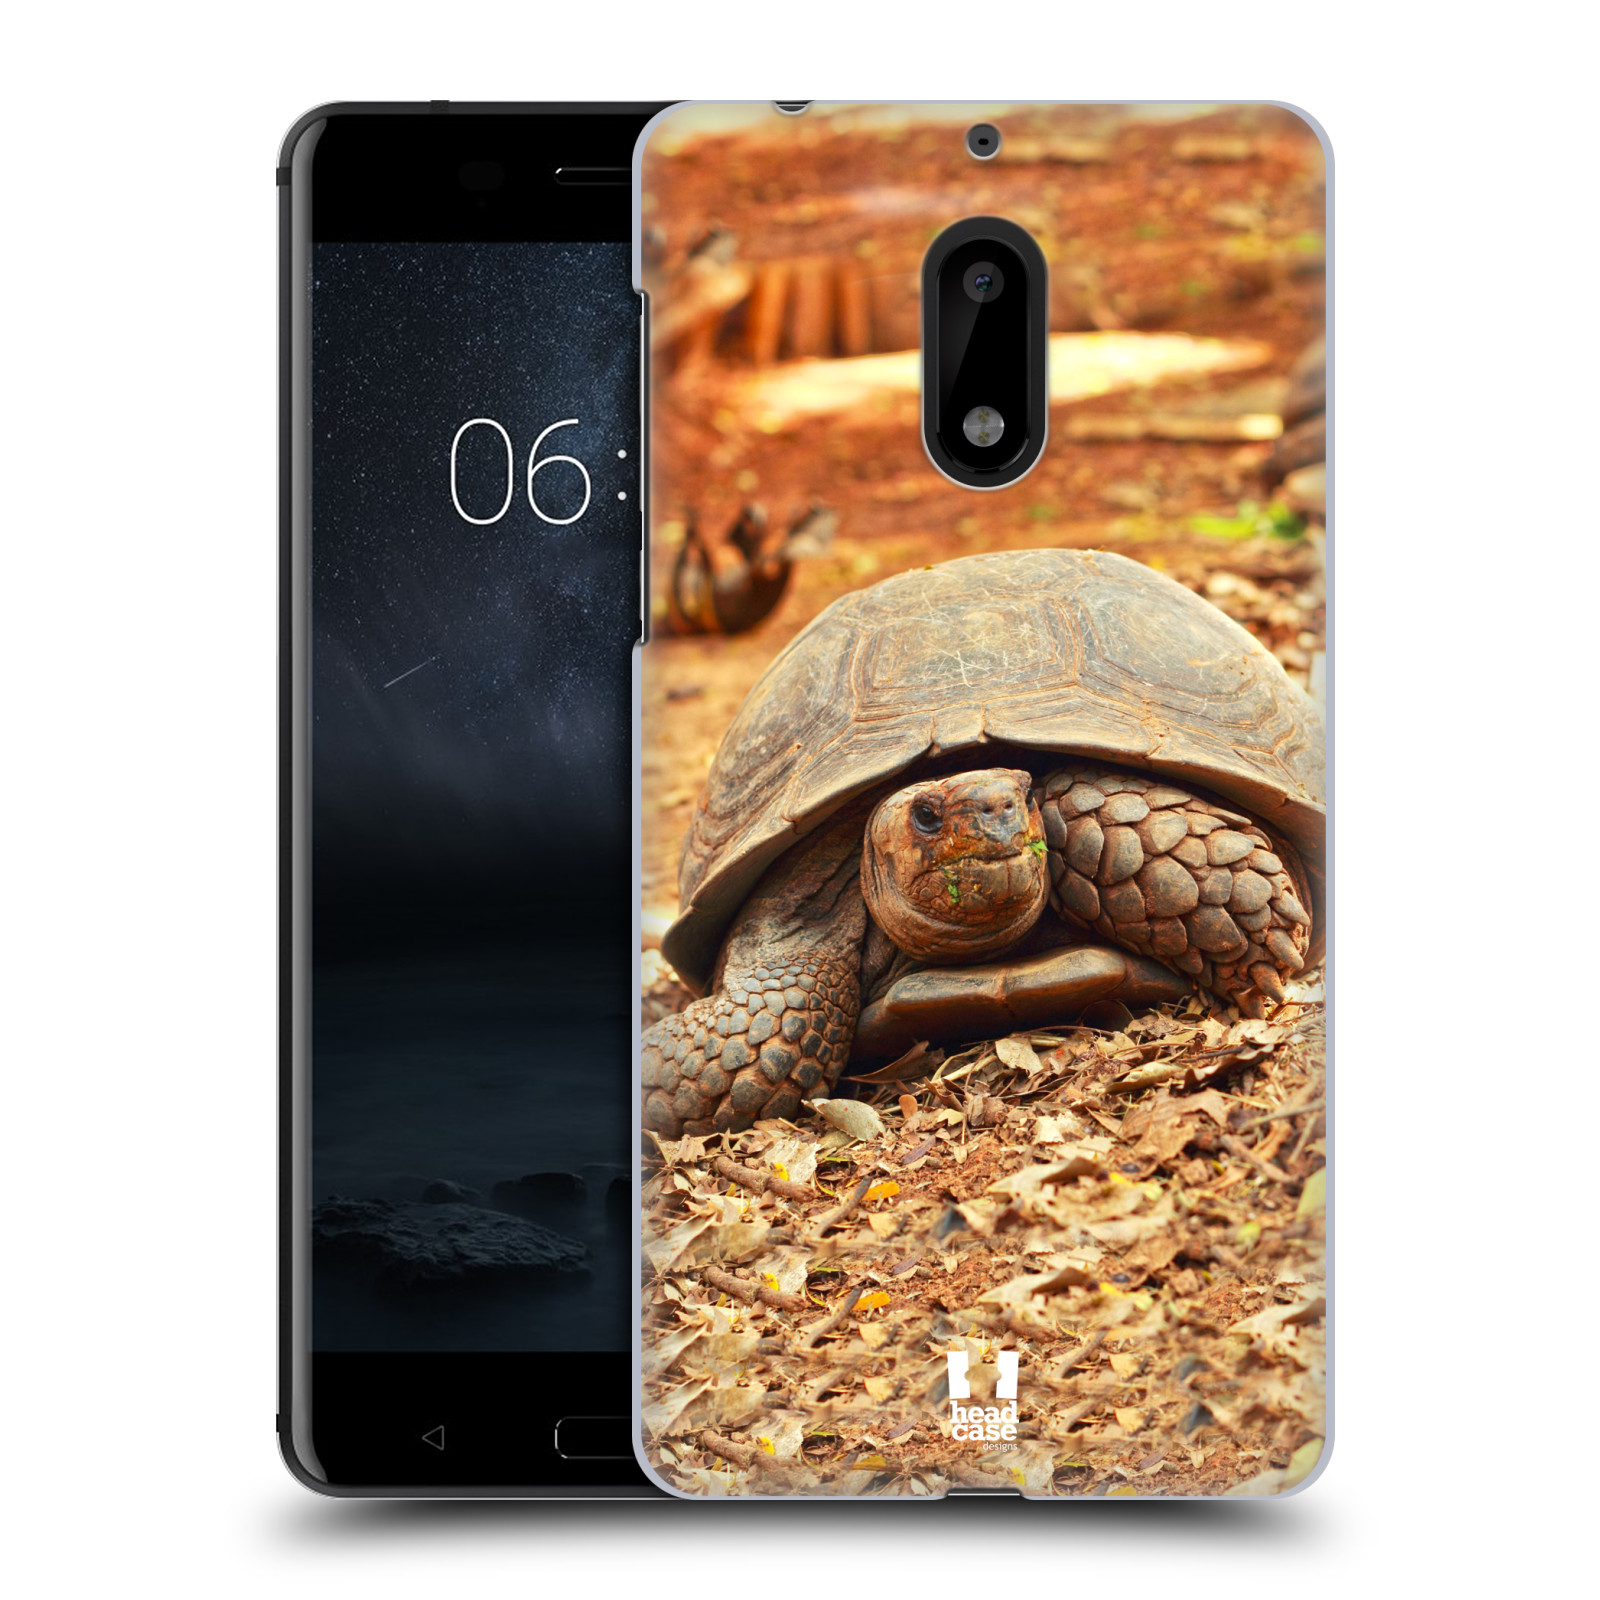 HEAD CASE plastový obal na mobil Nokia 6 vzor slavná zvířata foto želva